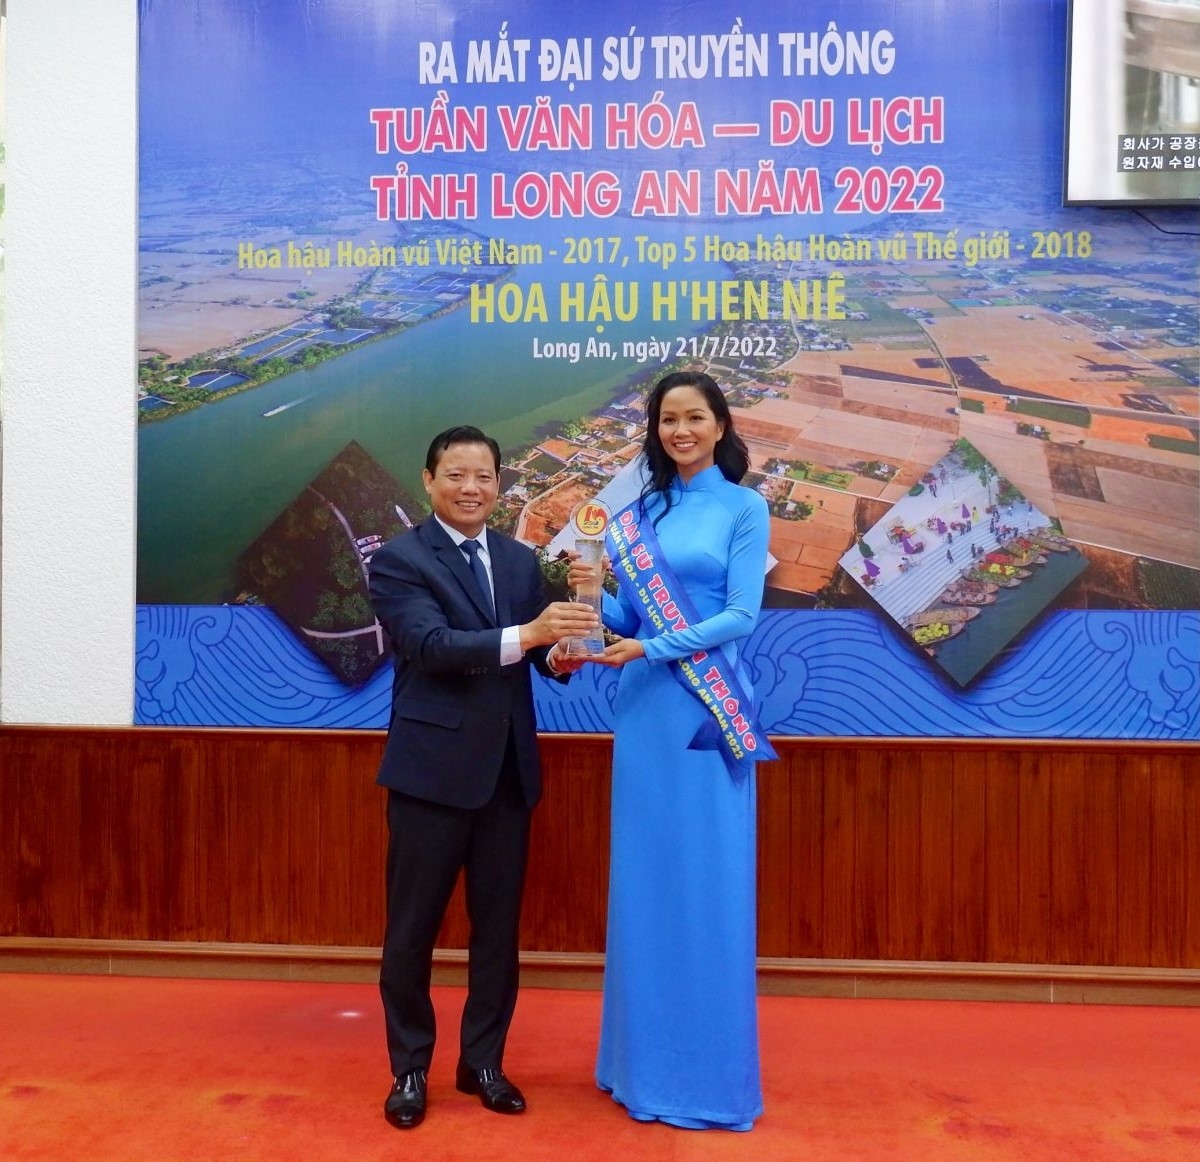 Phó Chủ tịch UBND tỉnh Long An - Phạm Tấn Hòa trao dải băng và biểu trưng danh hiệu Đại sứ Truyền thông cho Hoa hậu H’Hen Niê